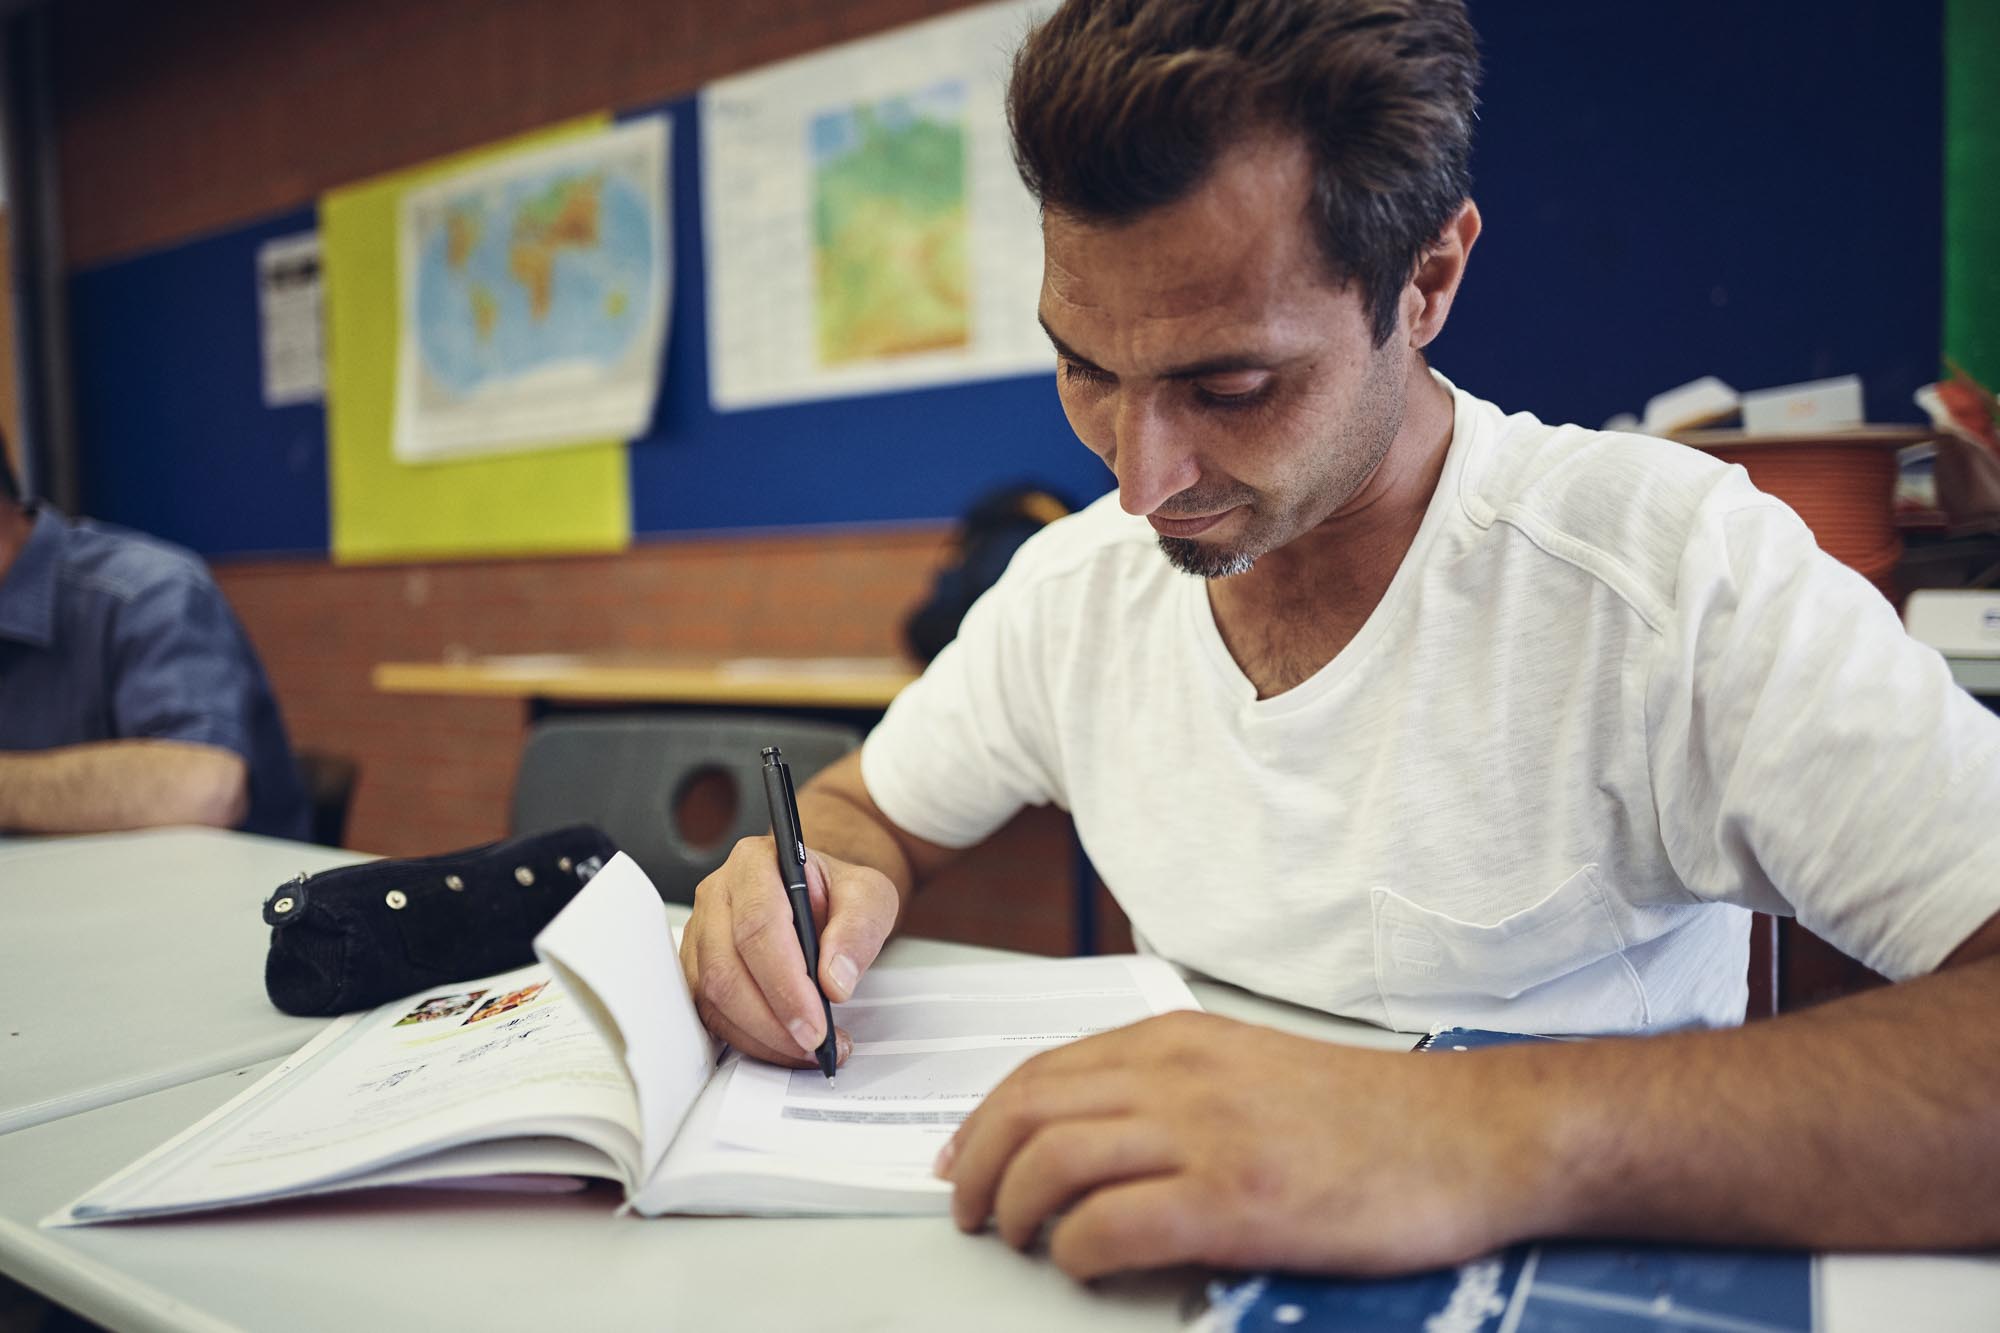 Ein Mann im weißen T-shirt sitzt an einem Stich in einem Klassenraum vor einem Buch und schreibt auf ein Arbeitsblatt